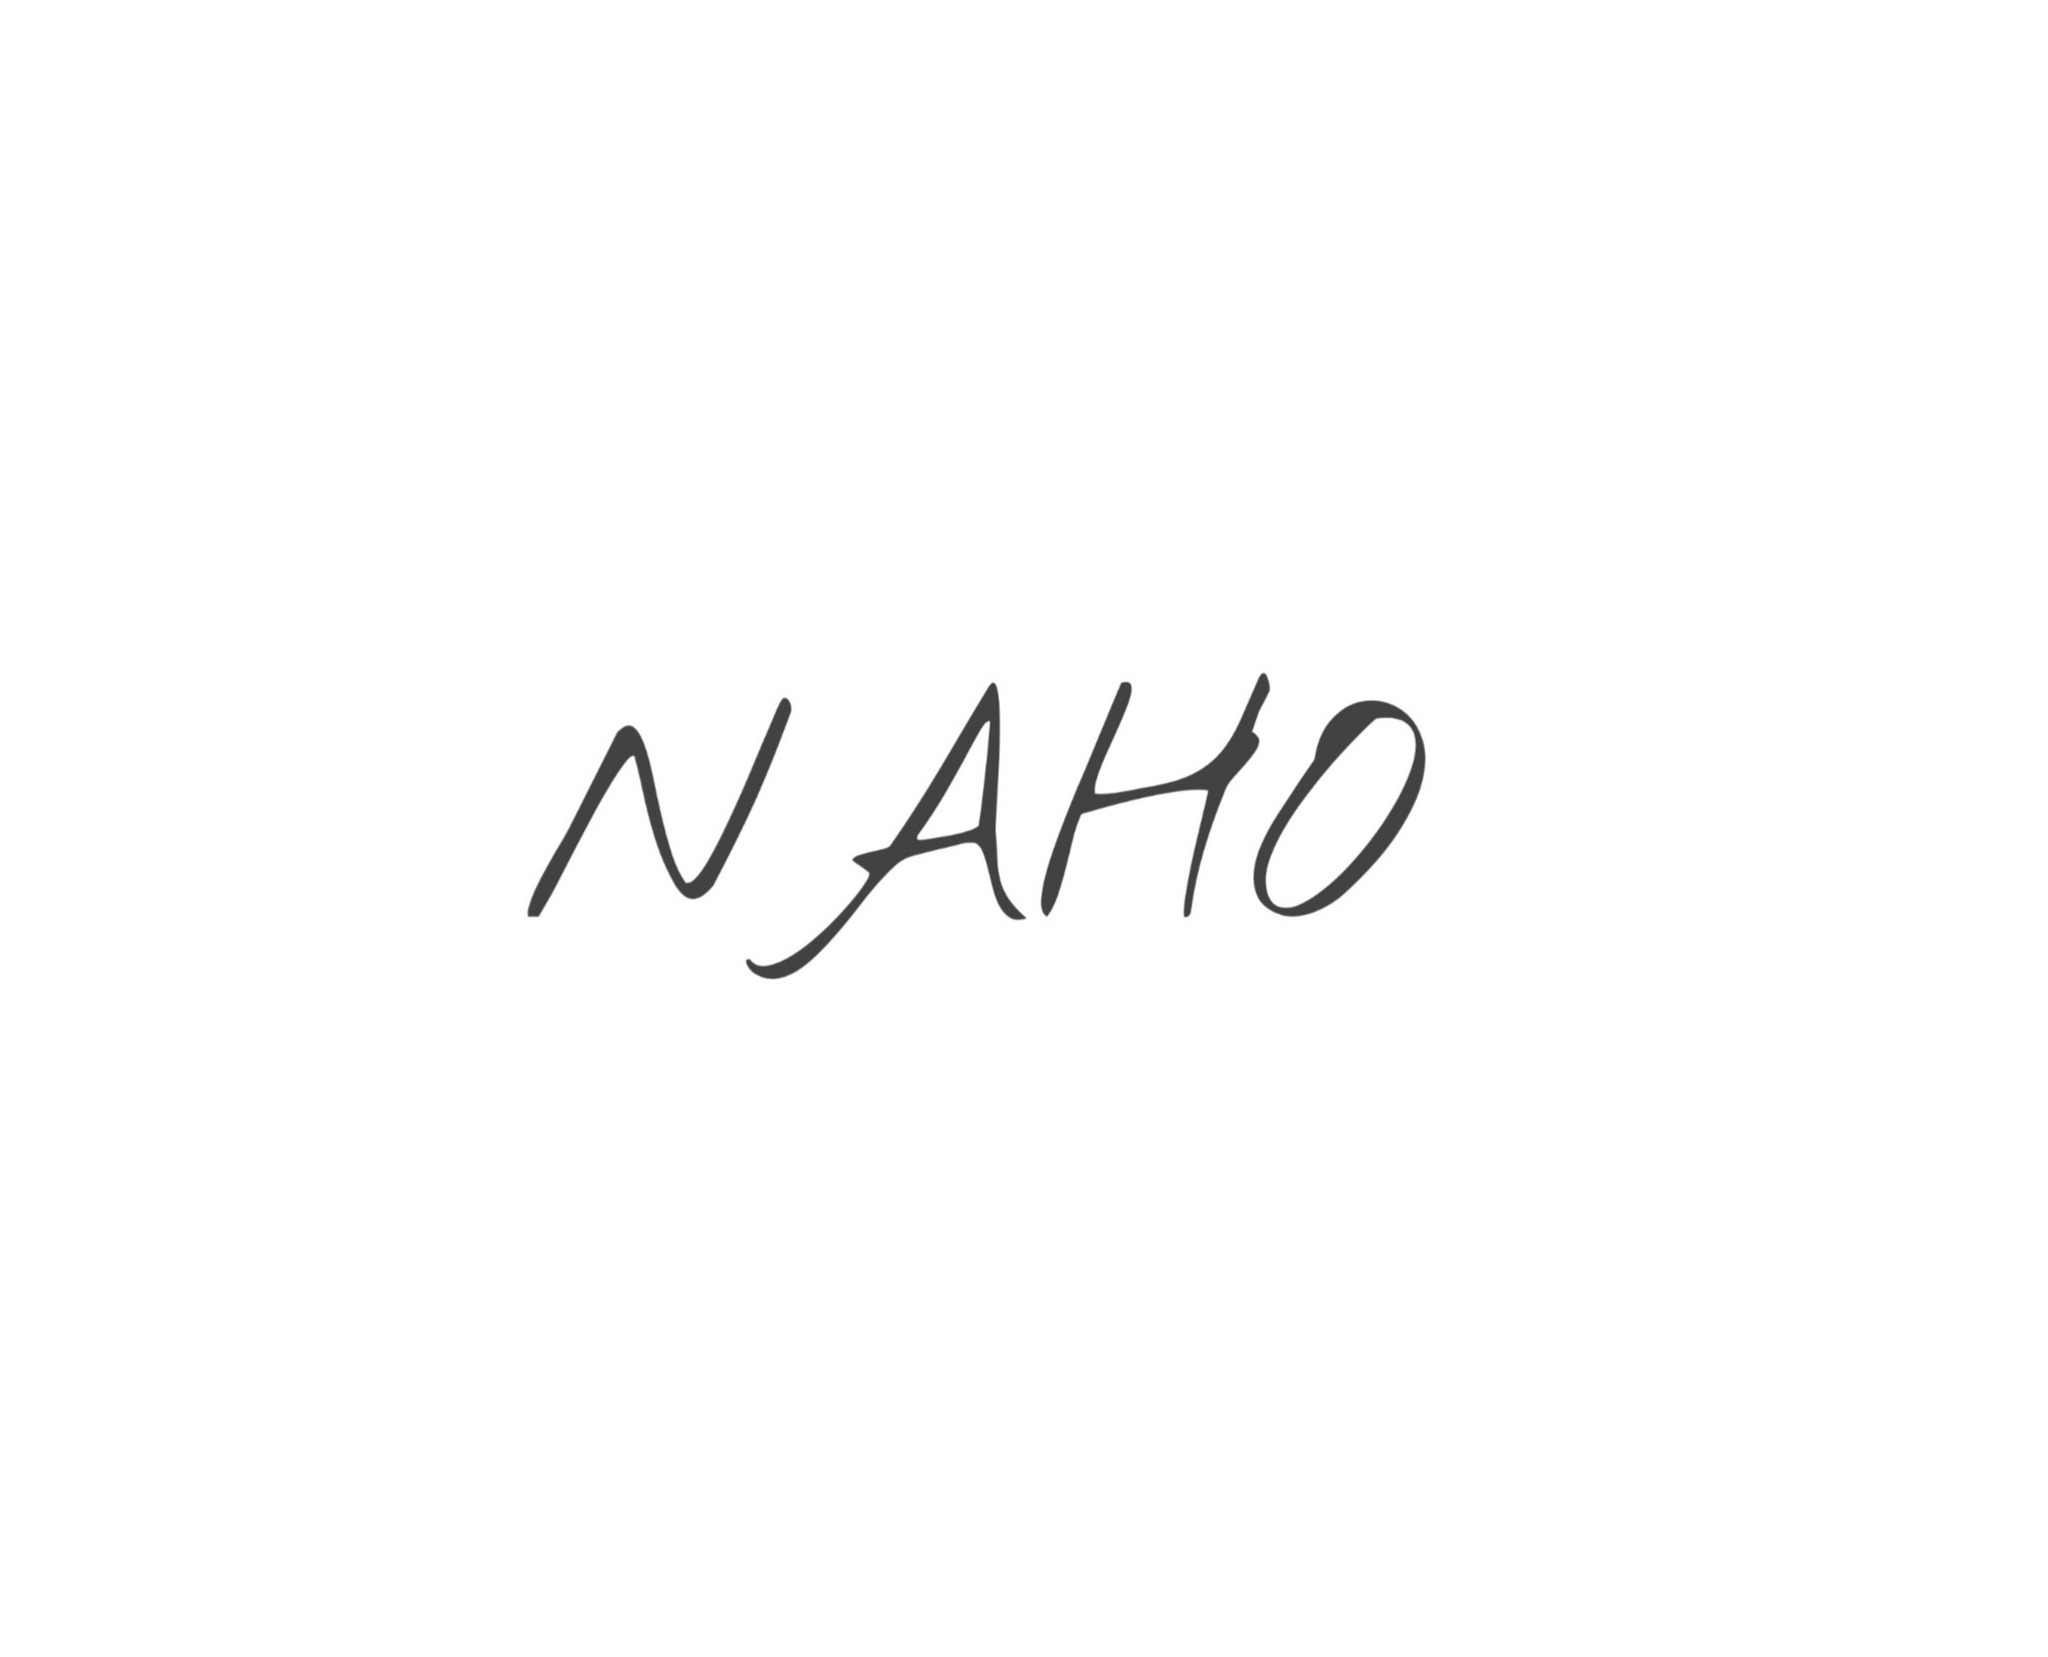 NAHO